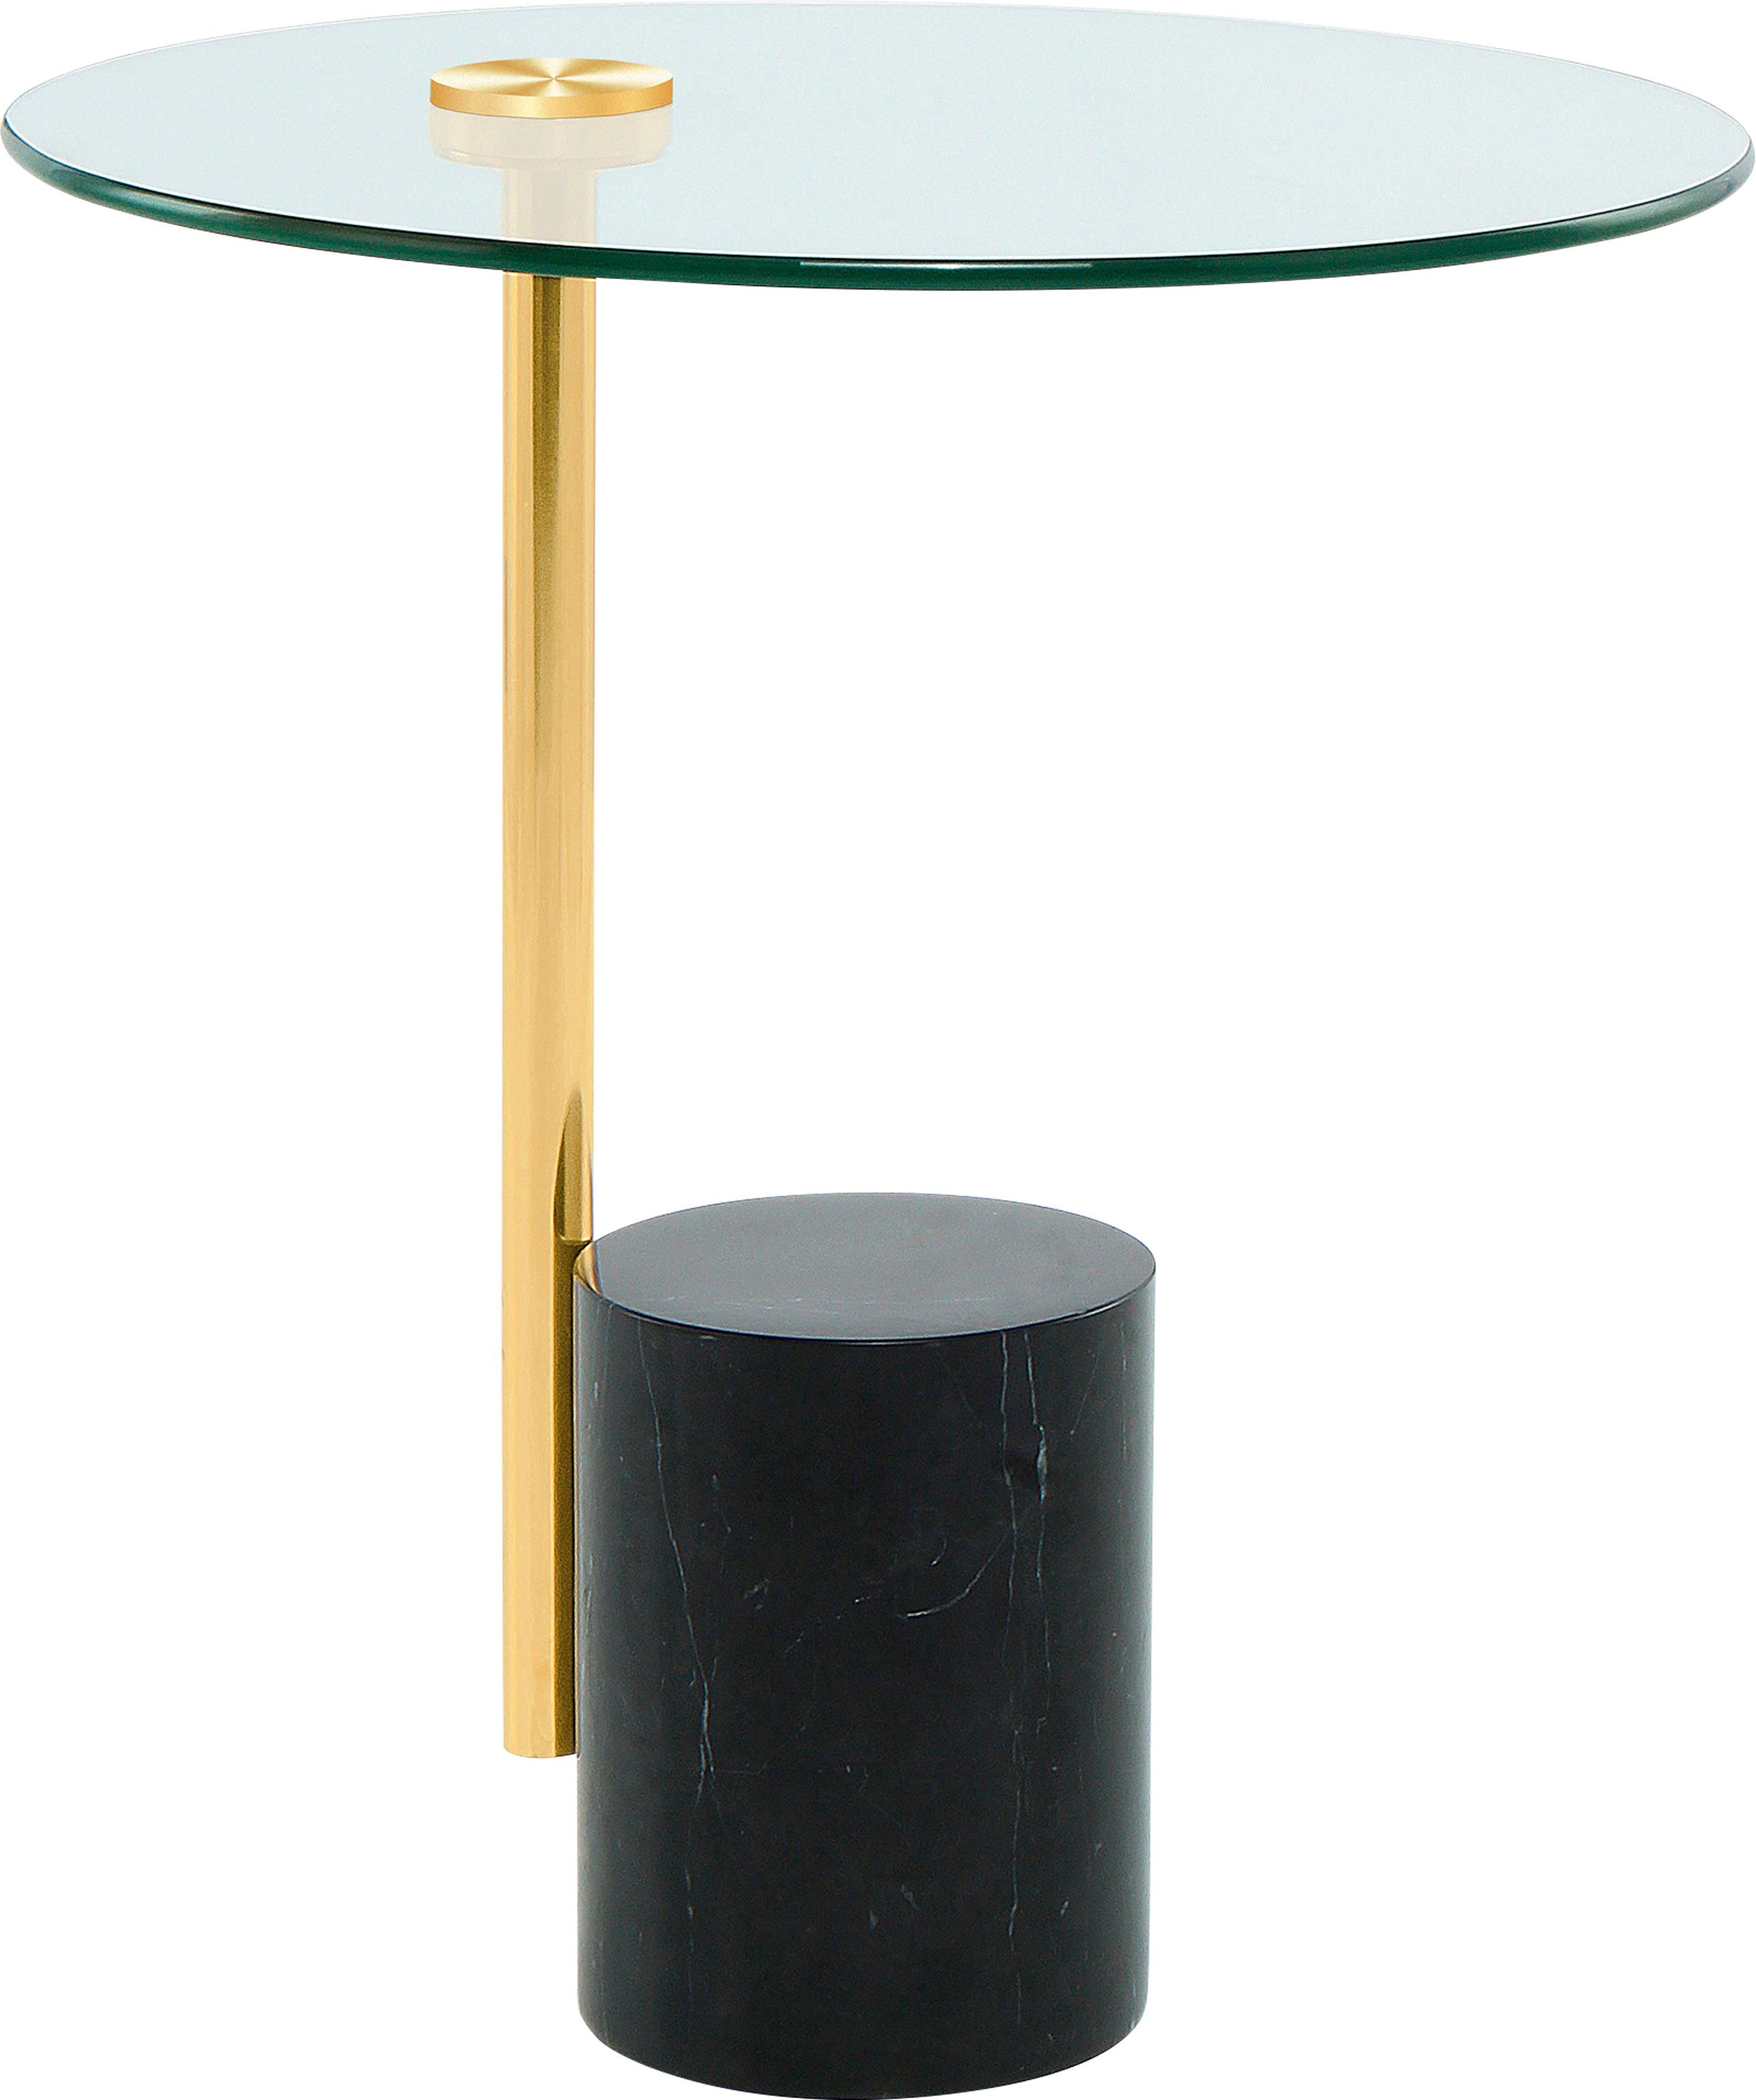 Kayoom Beistelltisch Beistelltisch Rosario 525, Tischgestell in Metall-Marmor-Kombination, Sockel Ø 17 cm gold/schwarz | schwarz